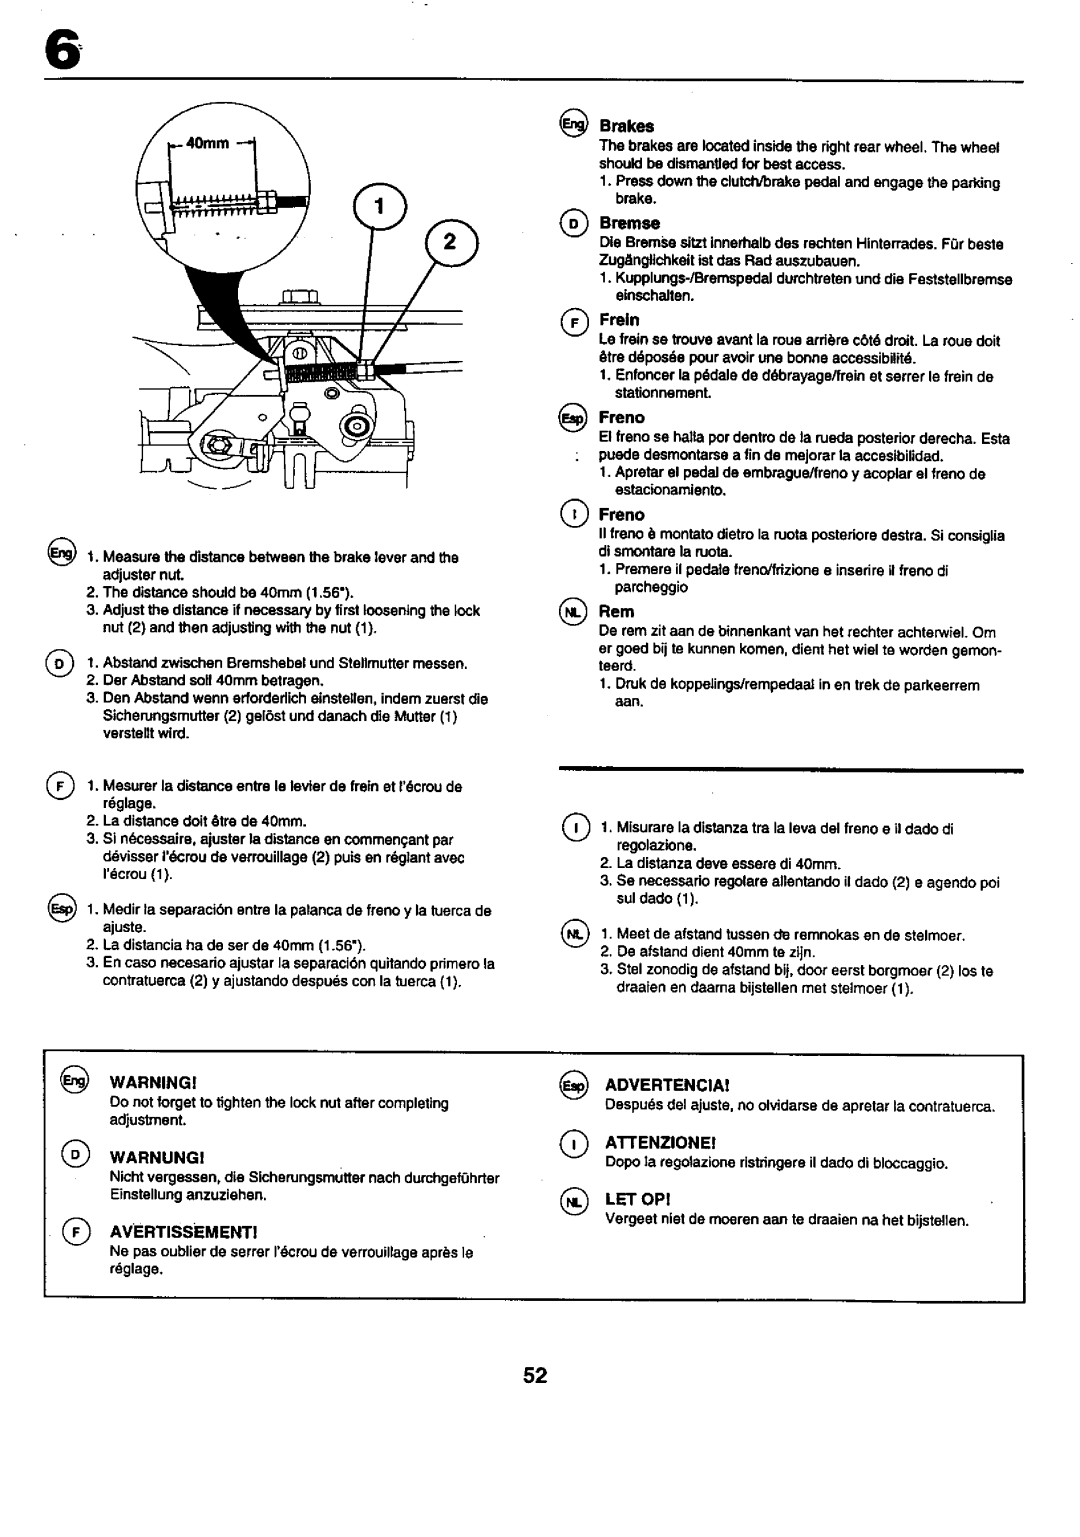 Craftsman 25949 instruction manual Der Abstandsoil40rnm betragen, ATTENZlONEI, Let Op 